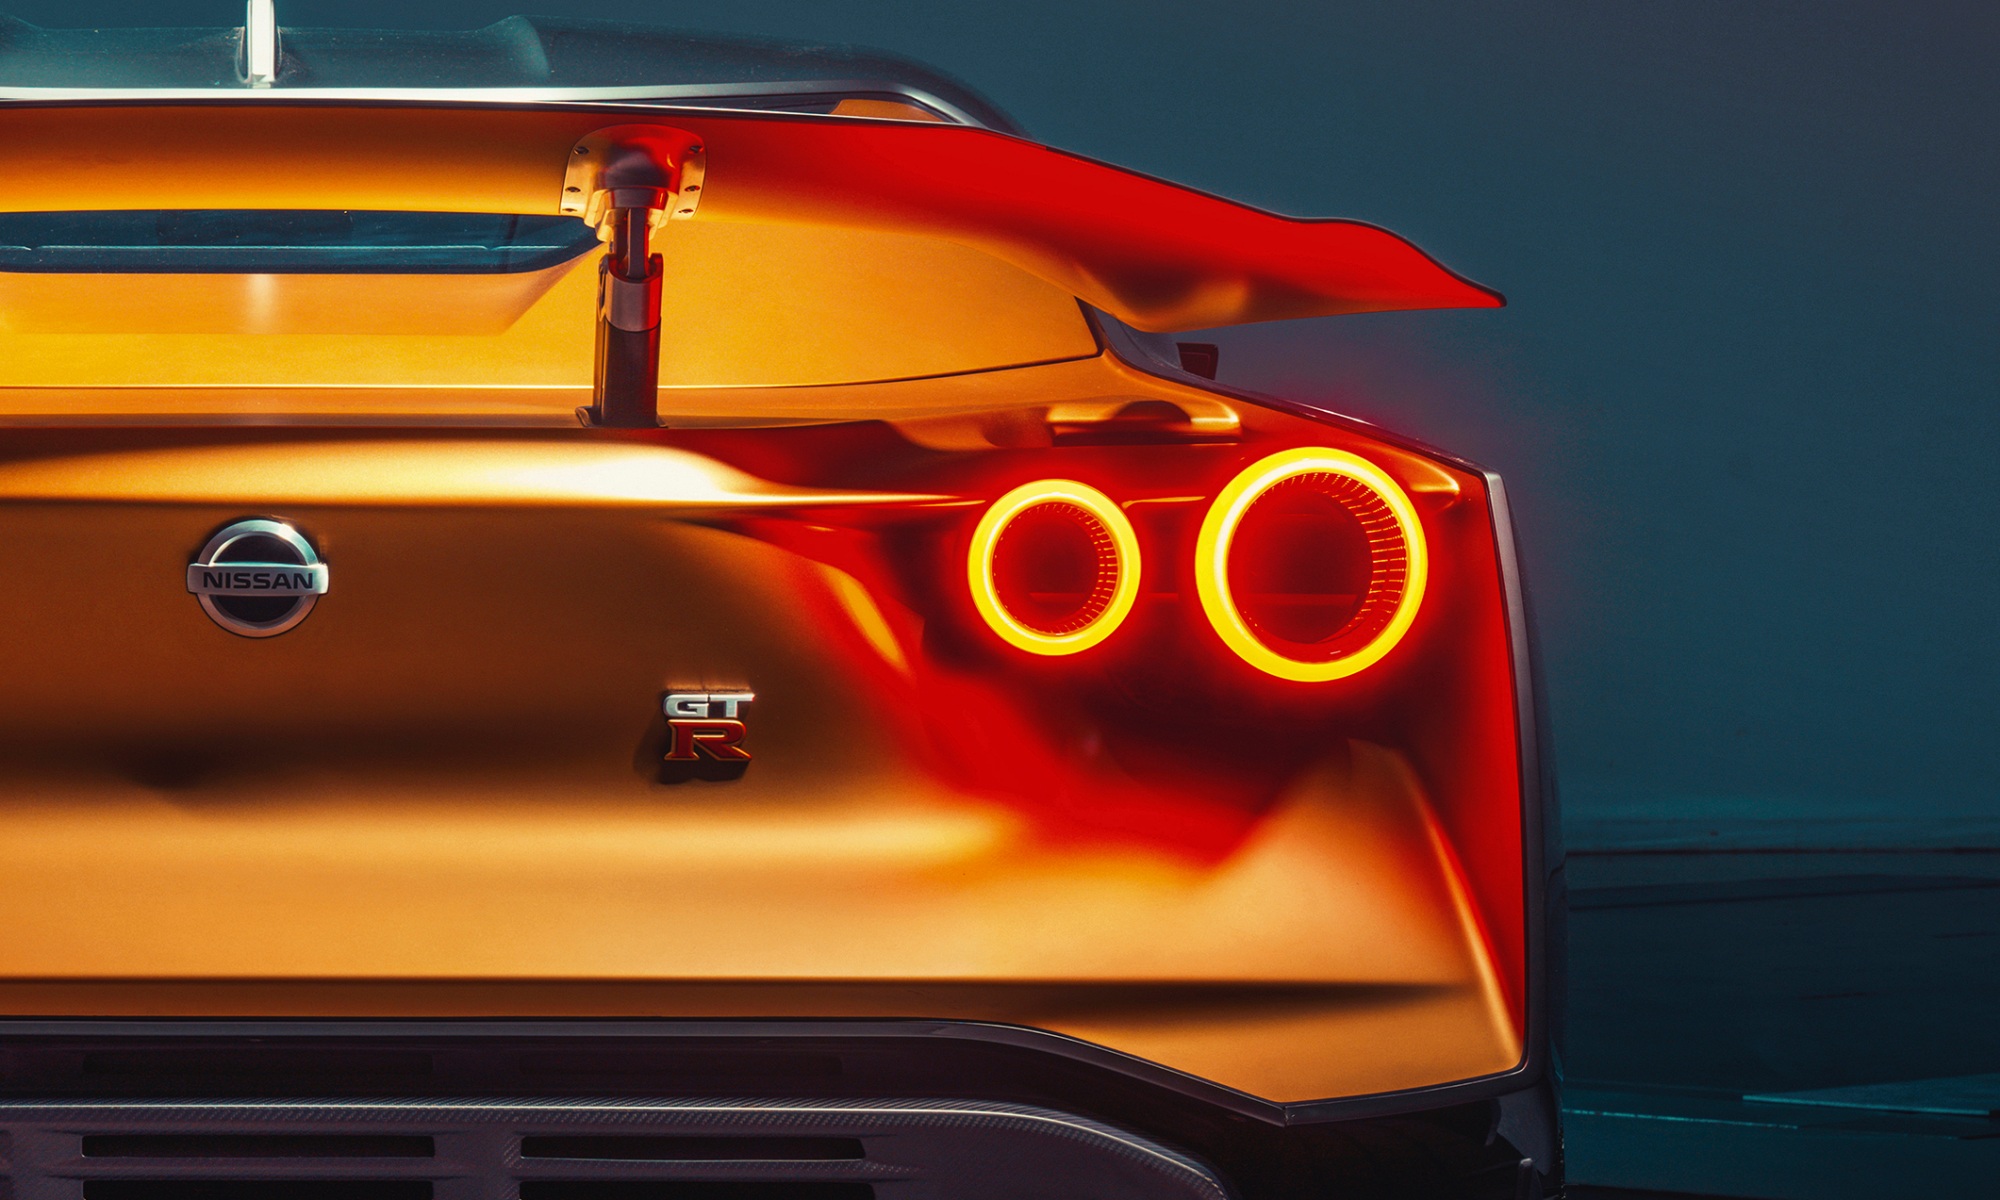 El GT-R representa las máximas aspiraciones deportivas dentro de Nissan.